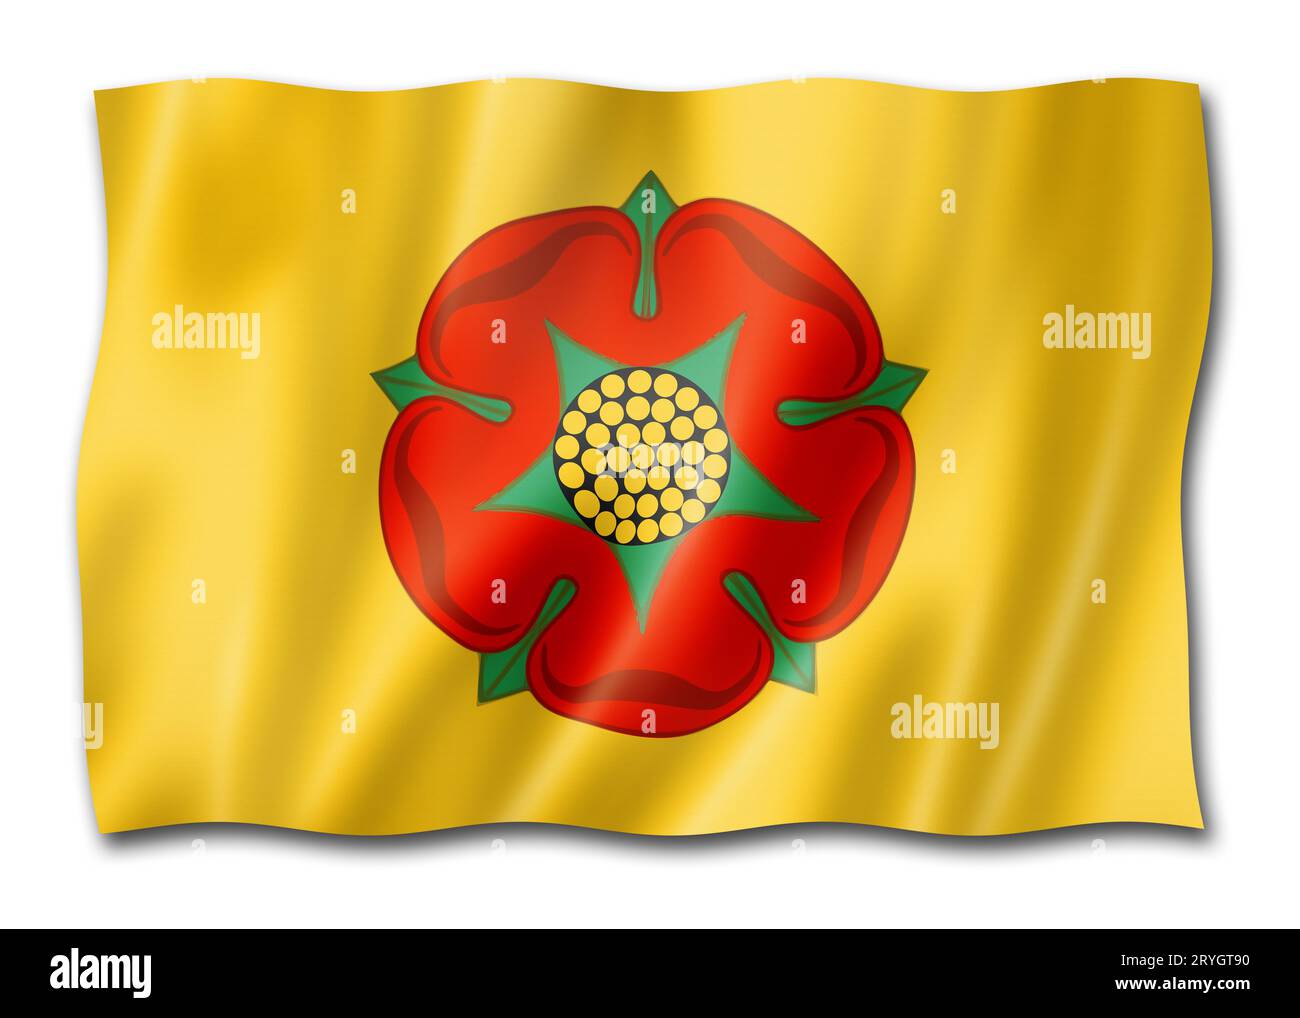 Lancashire County flag, UK Stock Photo